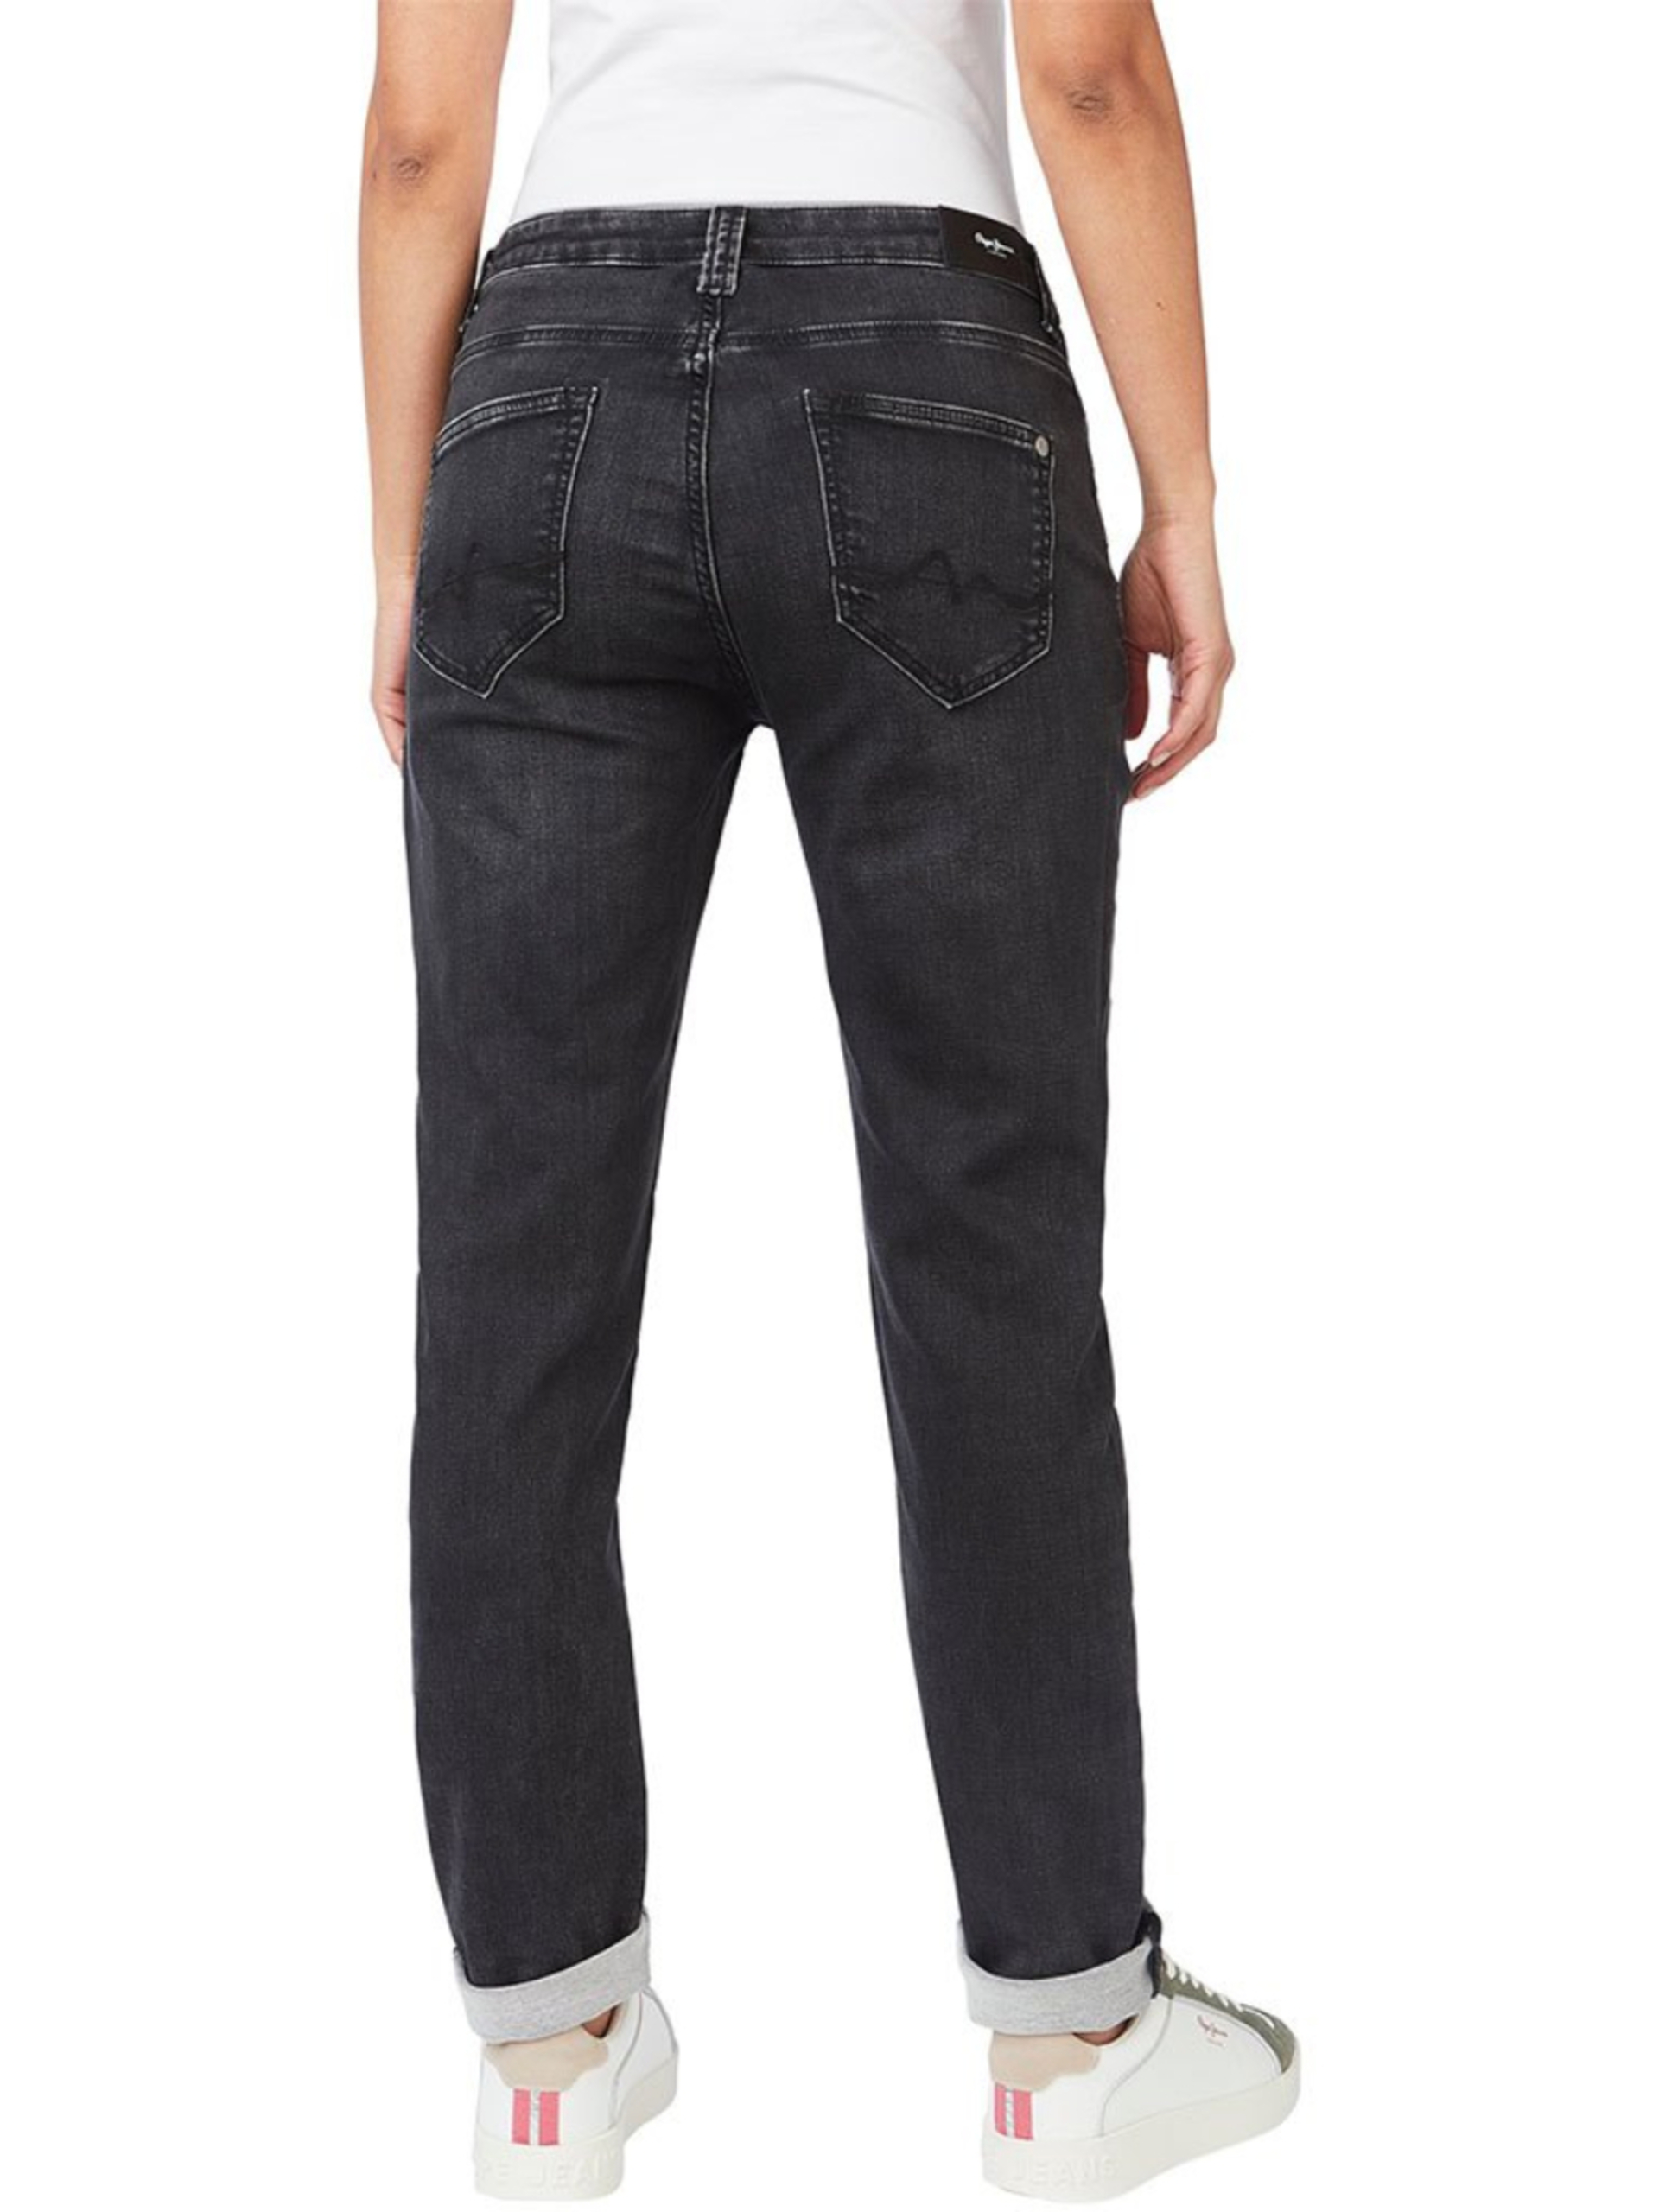 Pepe Jeans dámské černé džíny - 30/28 (0)